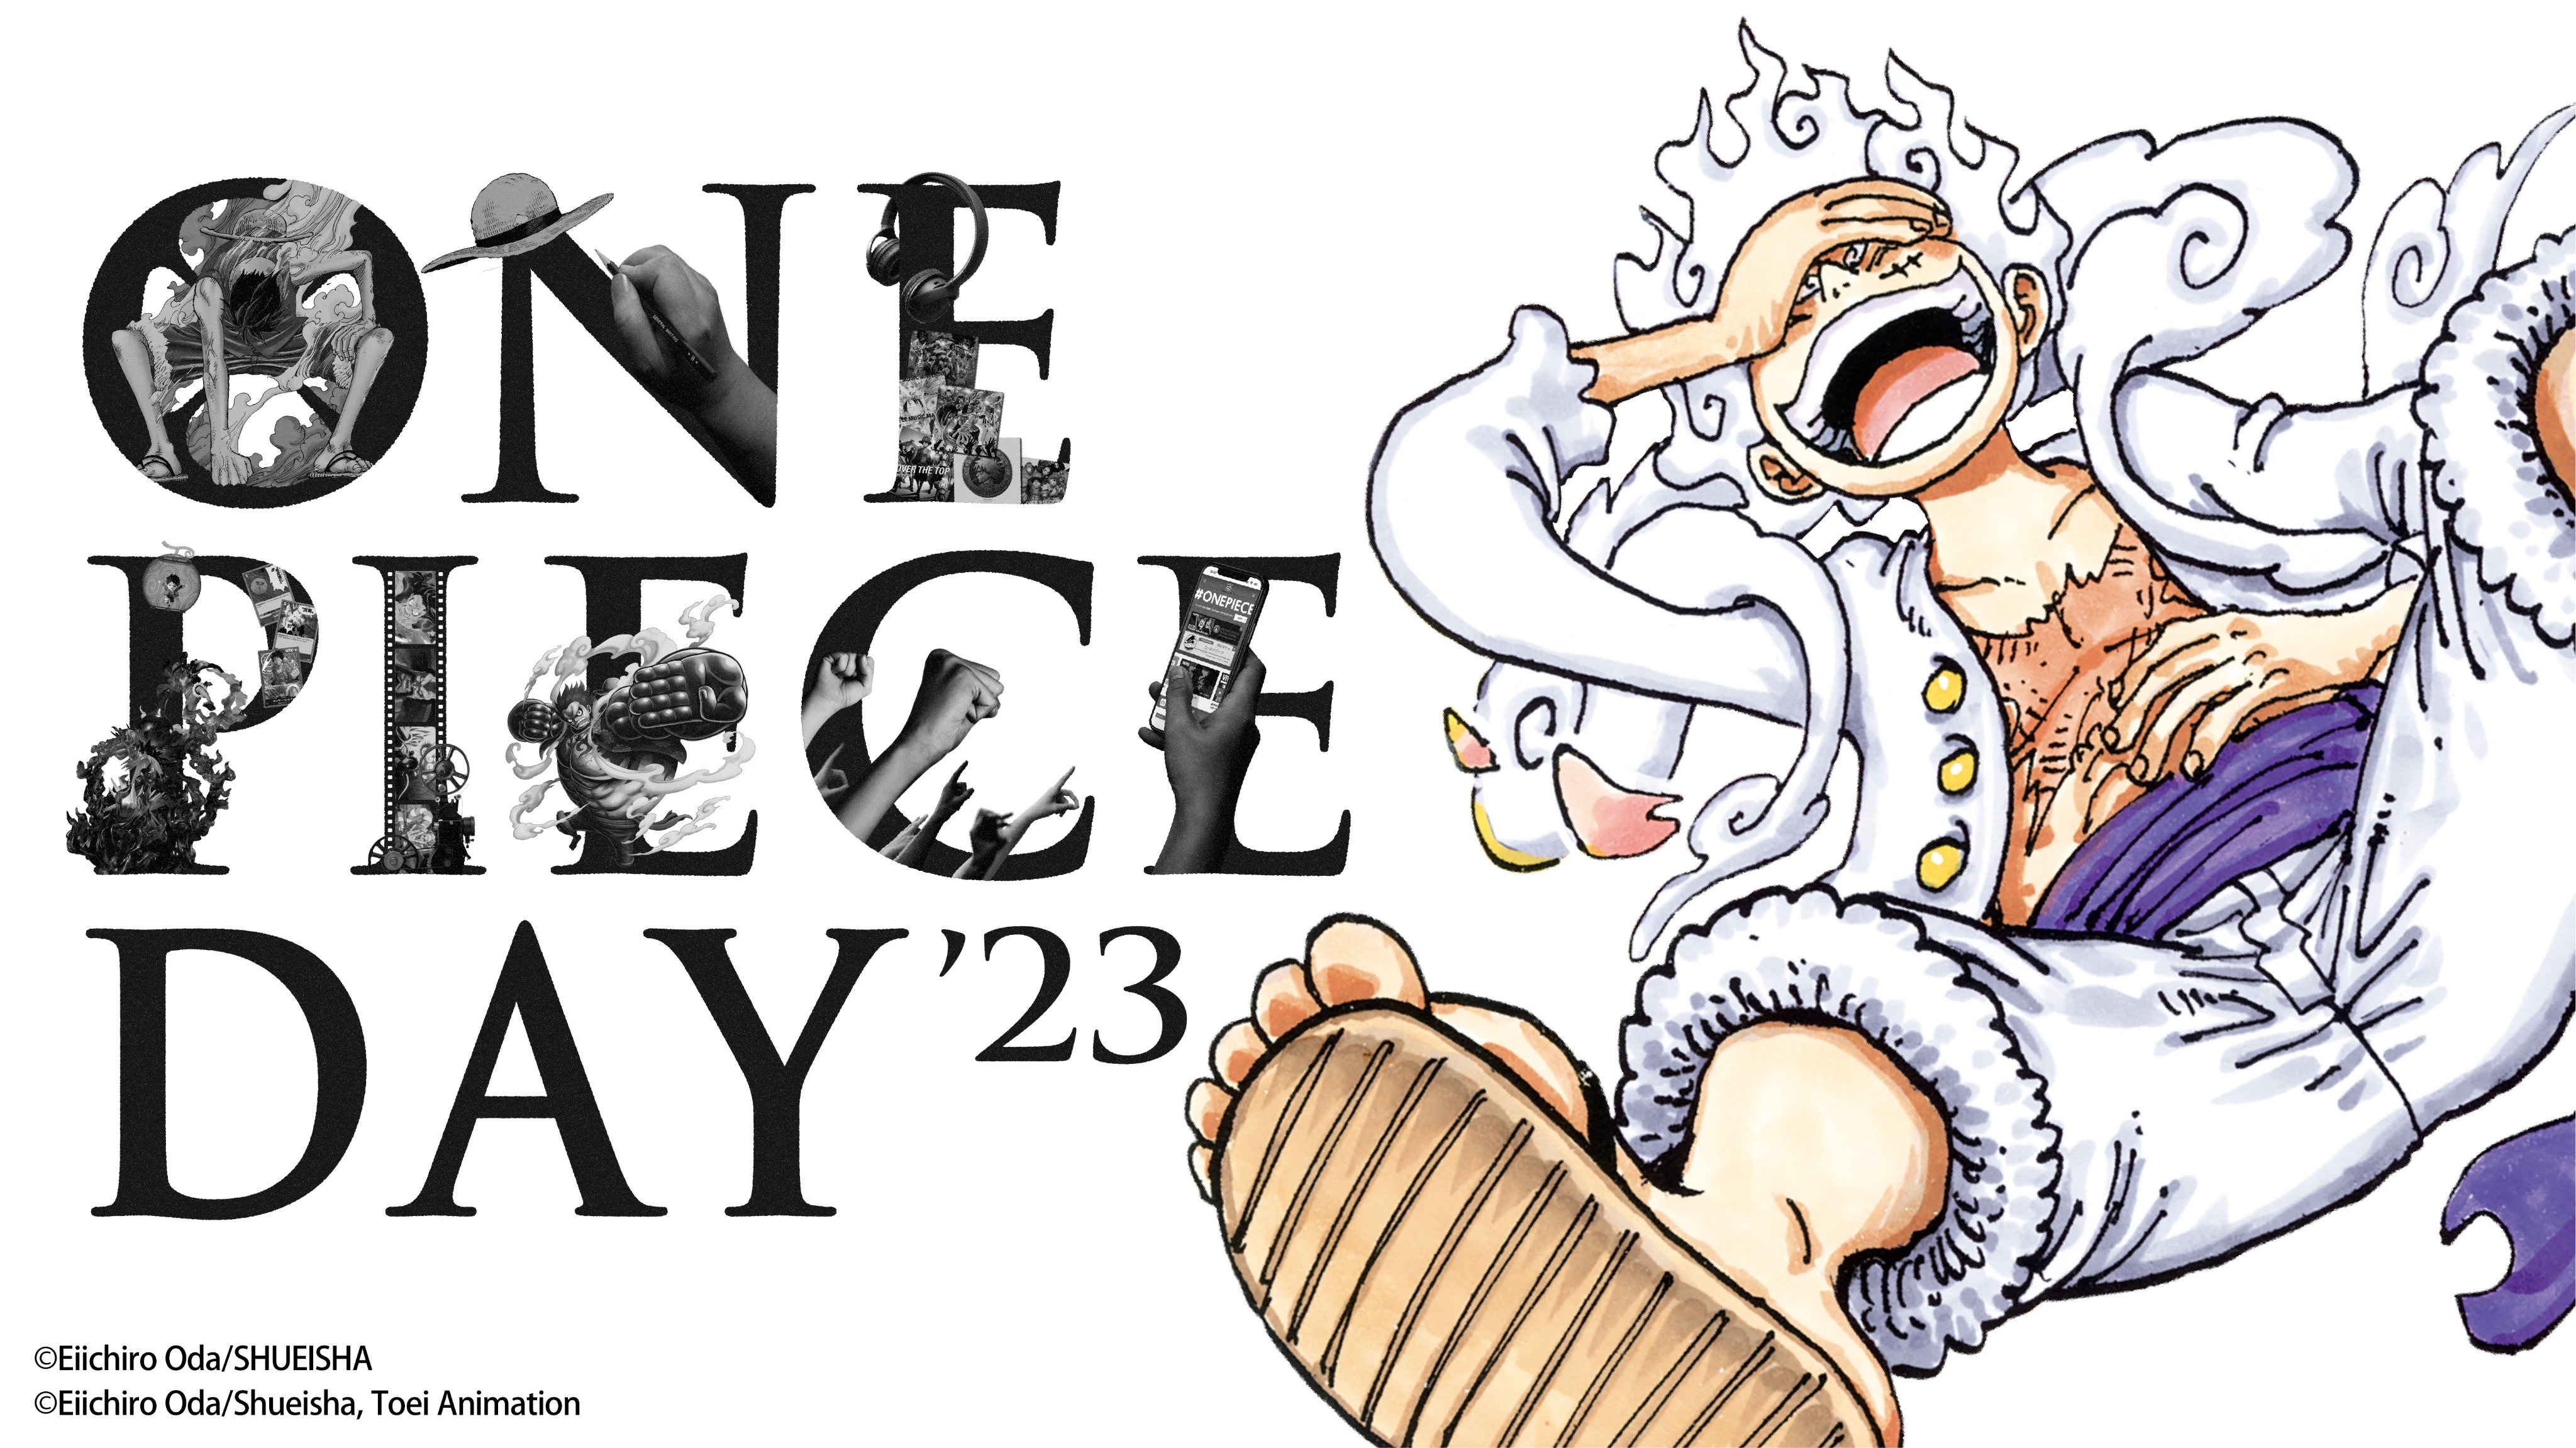 One Piece Day 2023